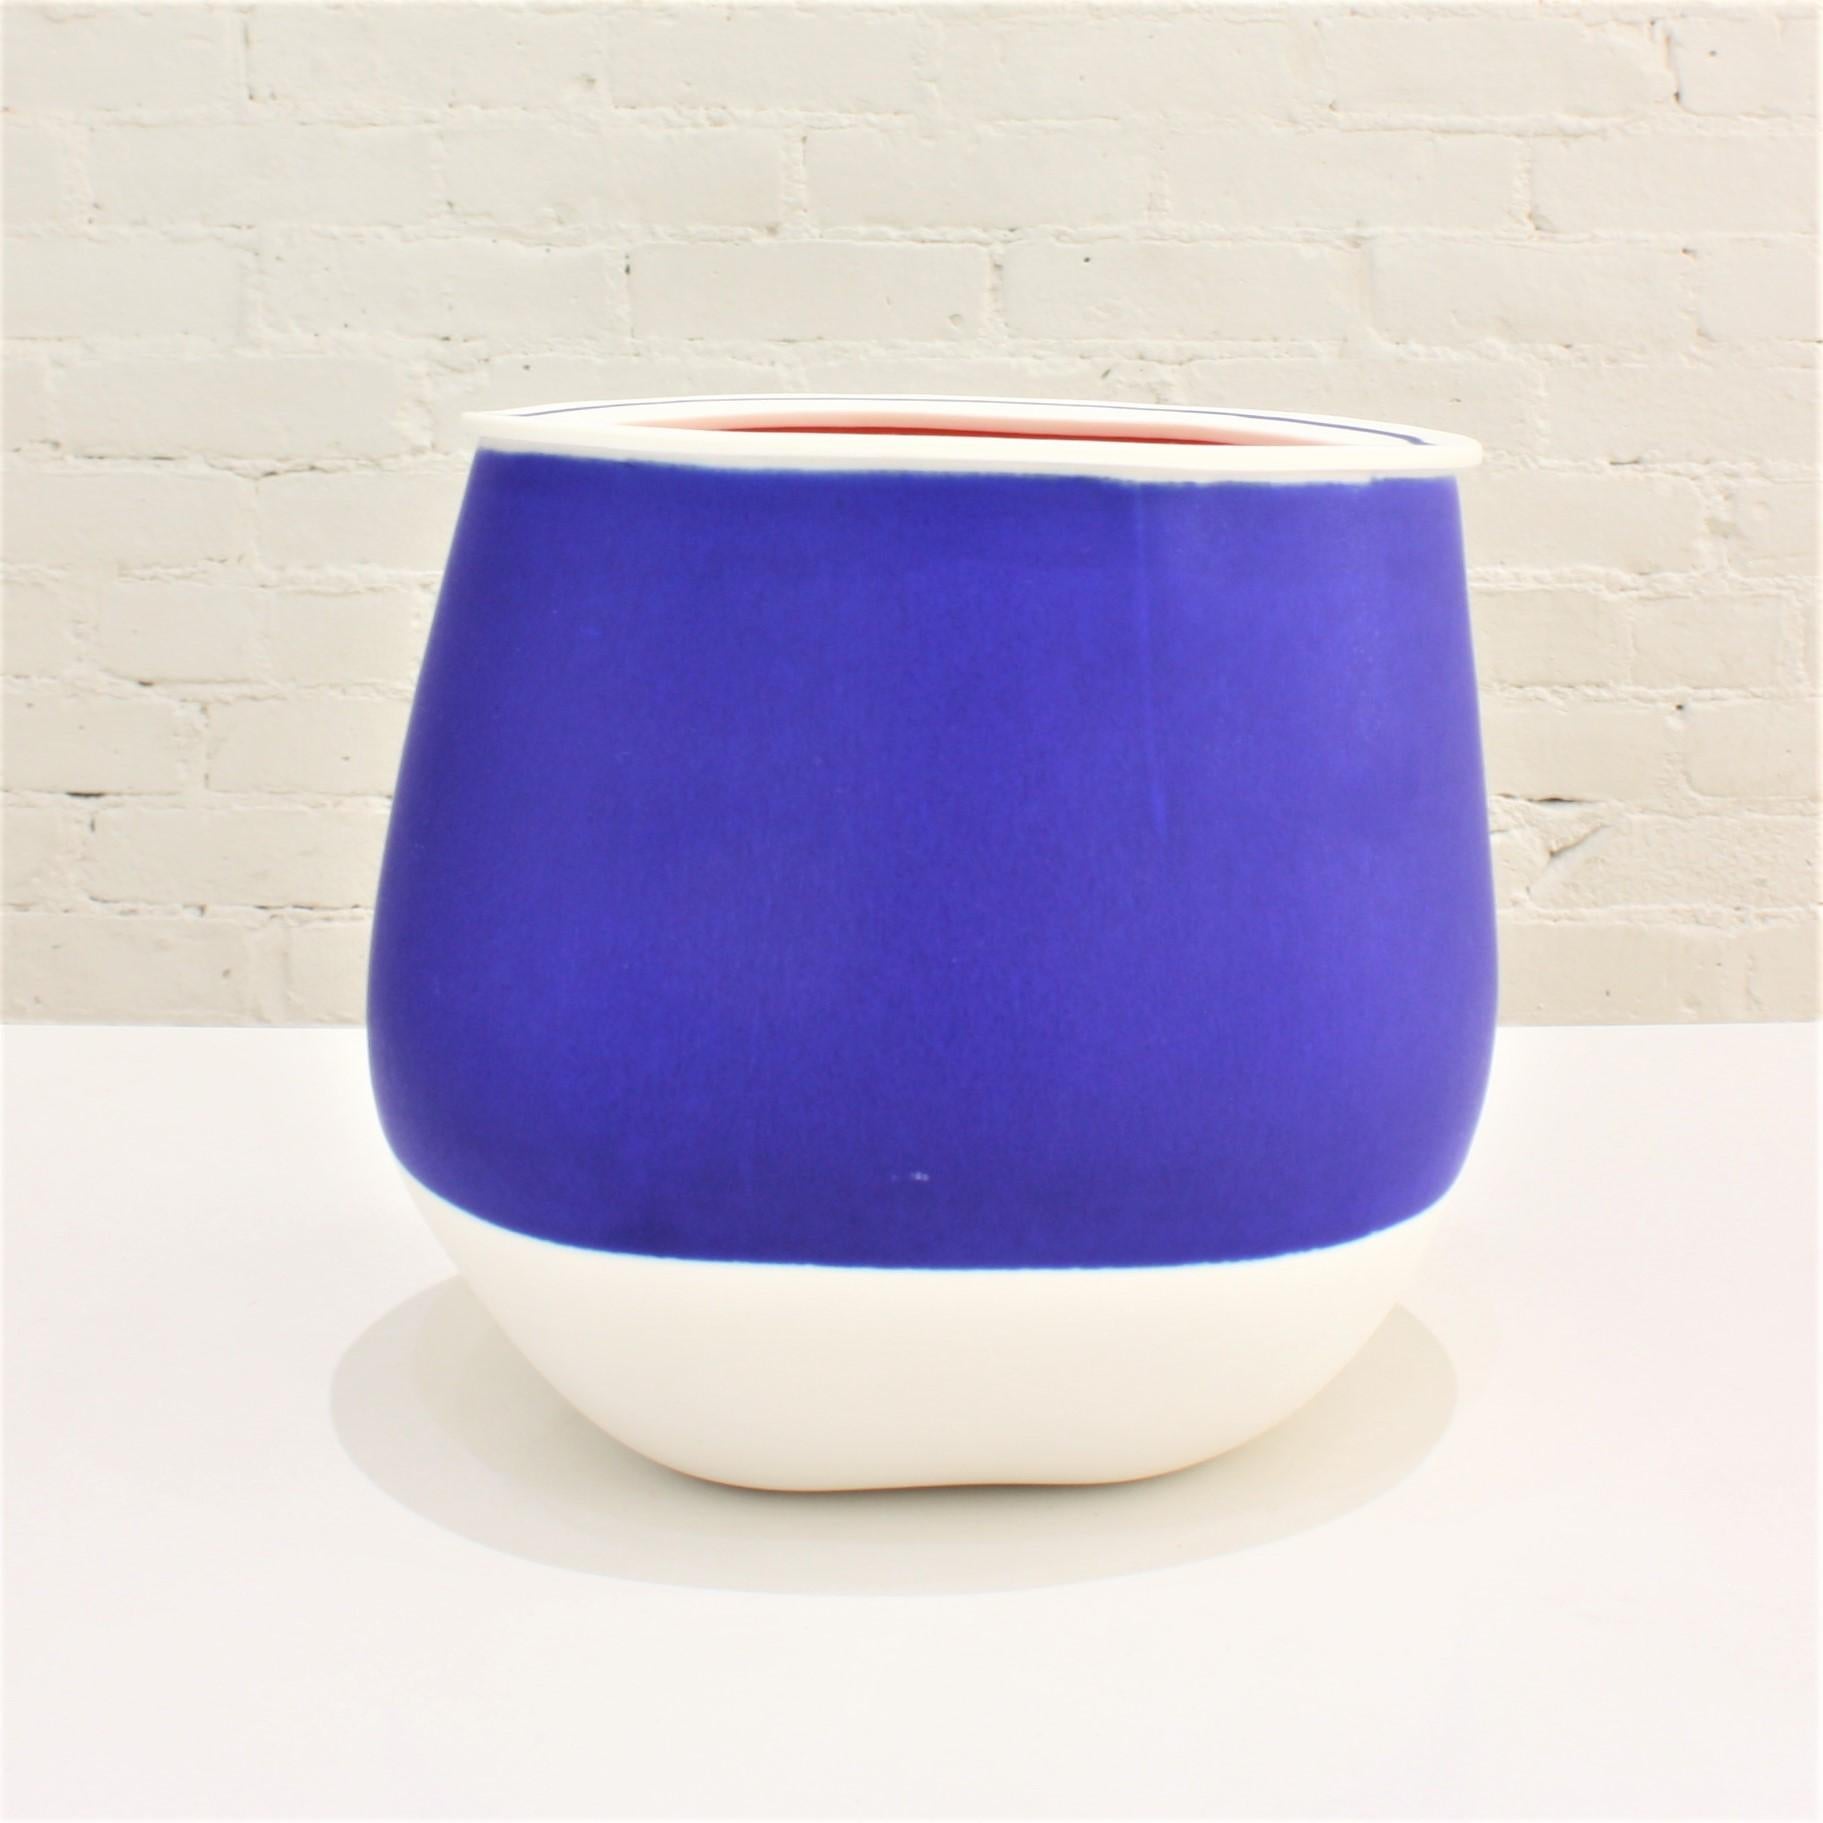 Minimalist Contemporary Blue Ceramic Vase For Sale